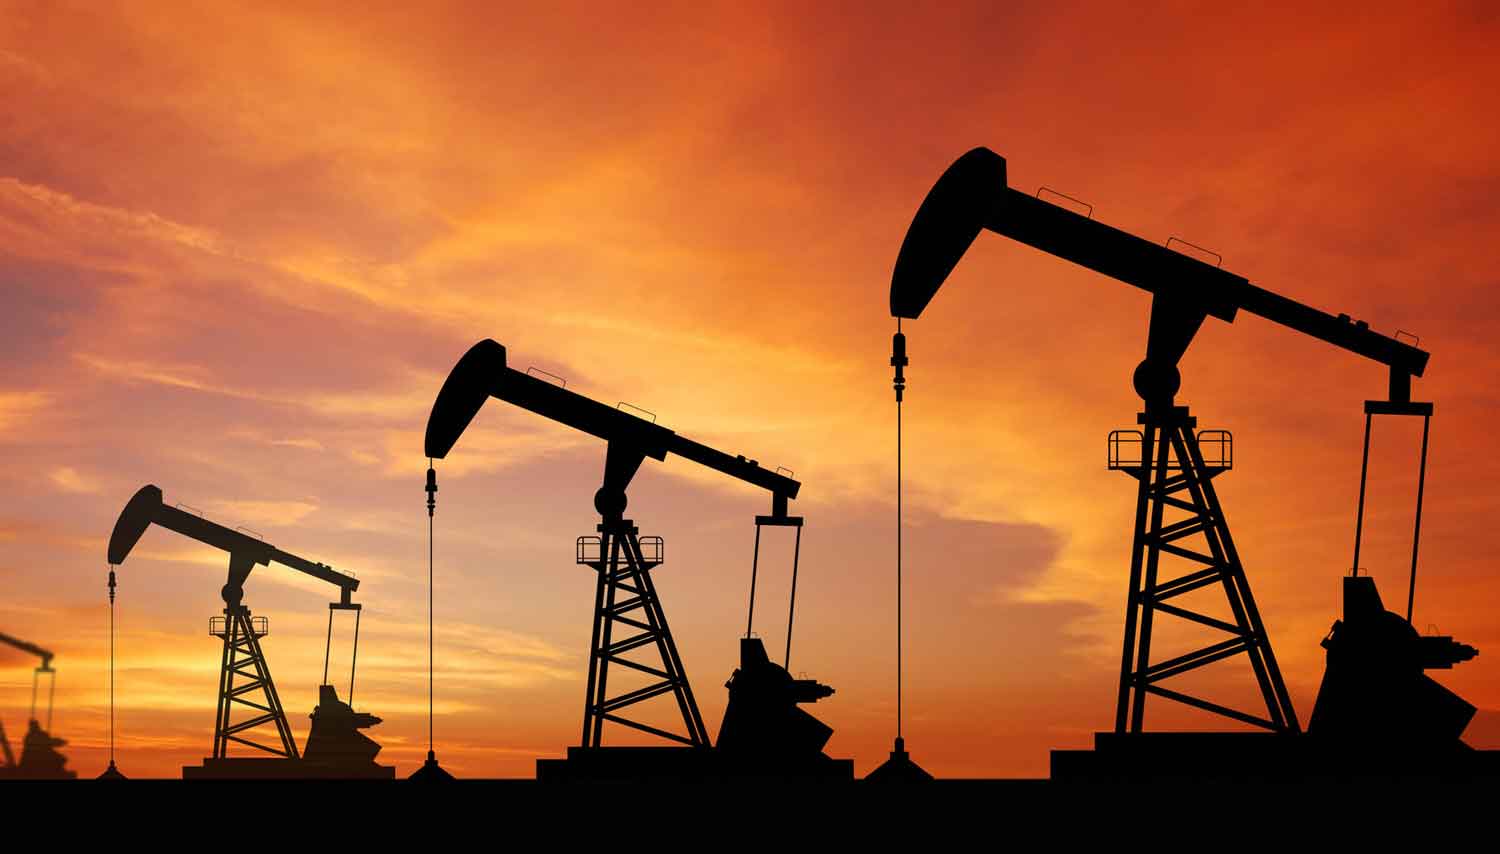 OPEC, OIL